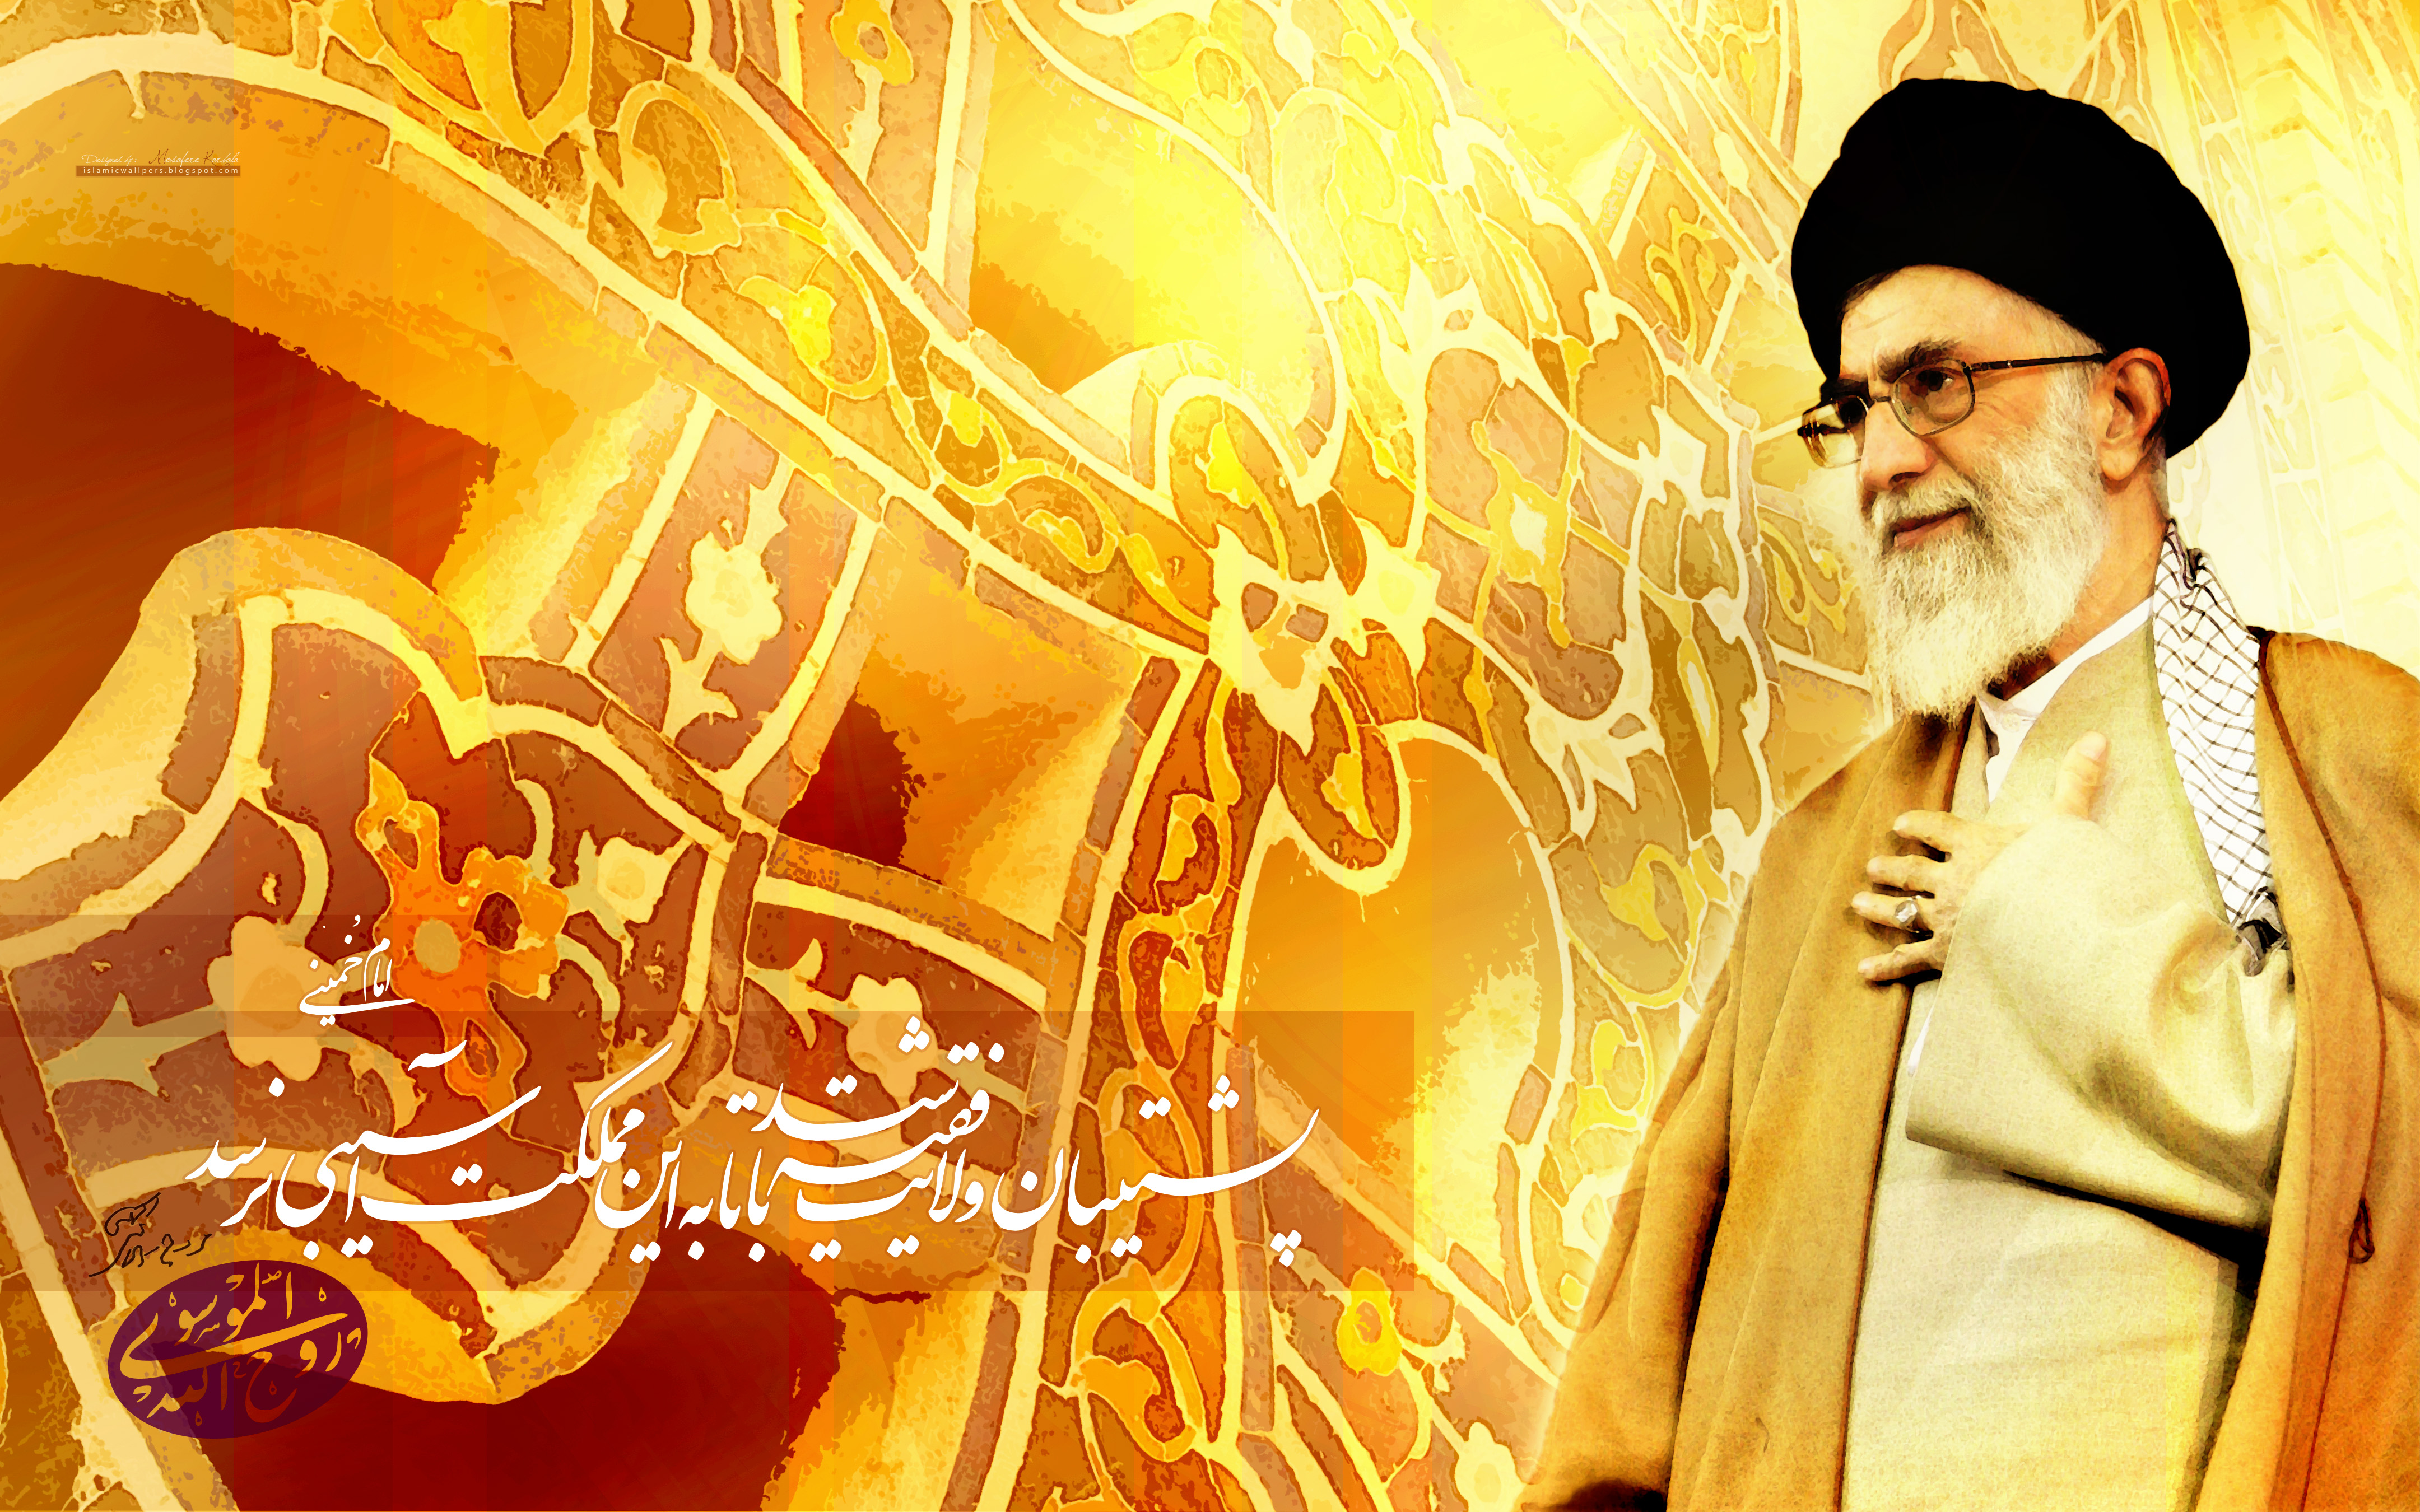 http://fc06.deviantart.net/fs71/f/2009/352/8/a/Ayatollah_Khamenei_Hz_by_islamicwallpers.jpg